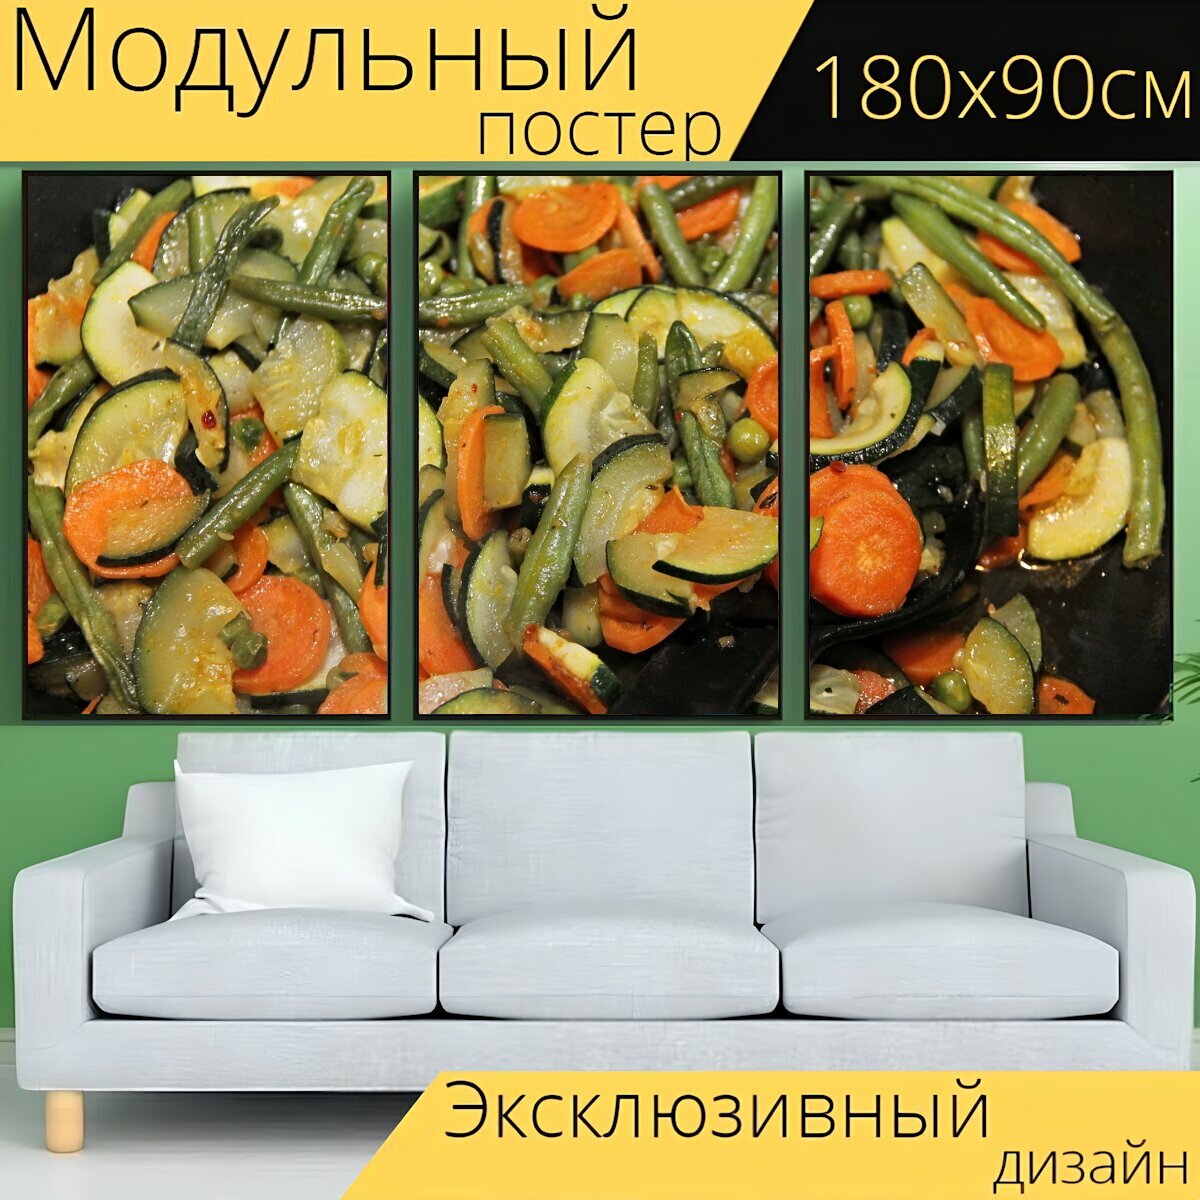 Модульный постер "Овощи, кастрюля, овощная сковорода" 180 x 90 см. для интерьера